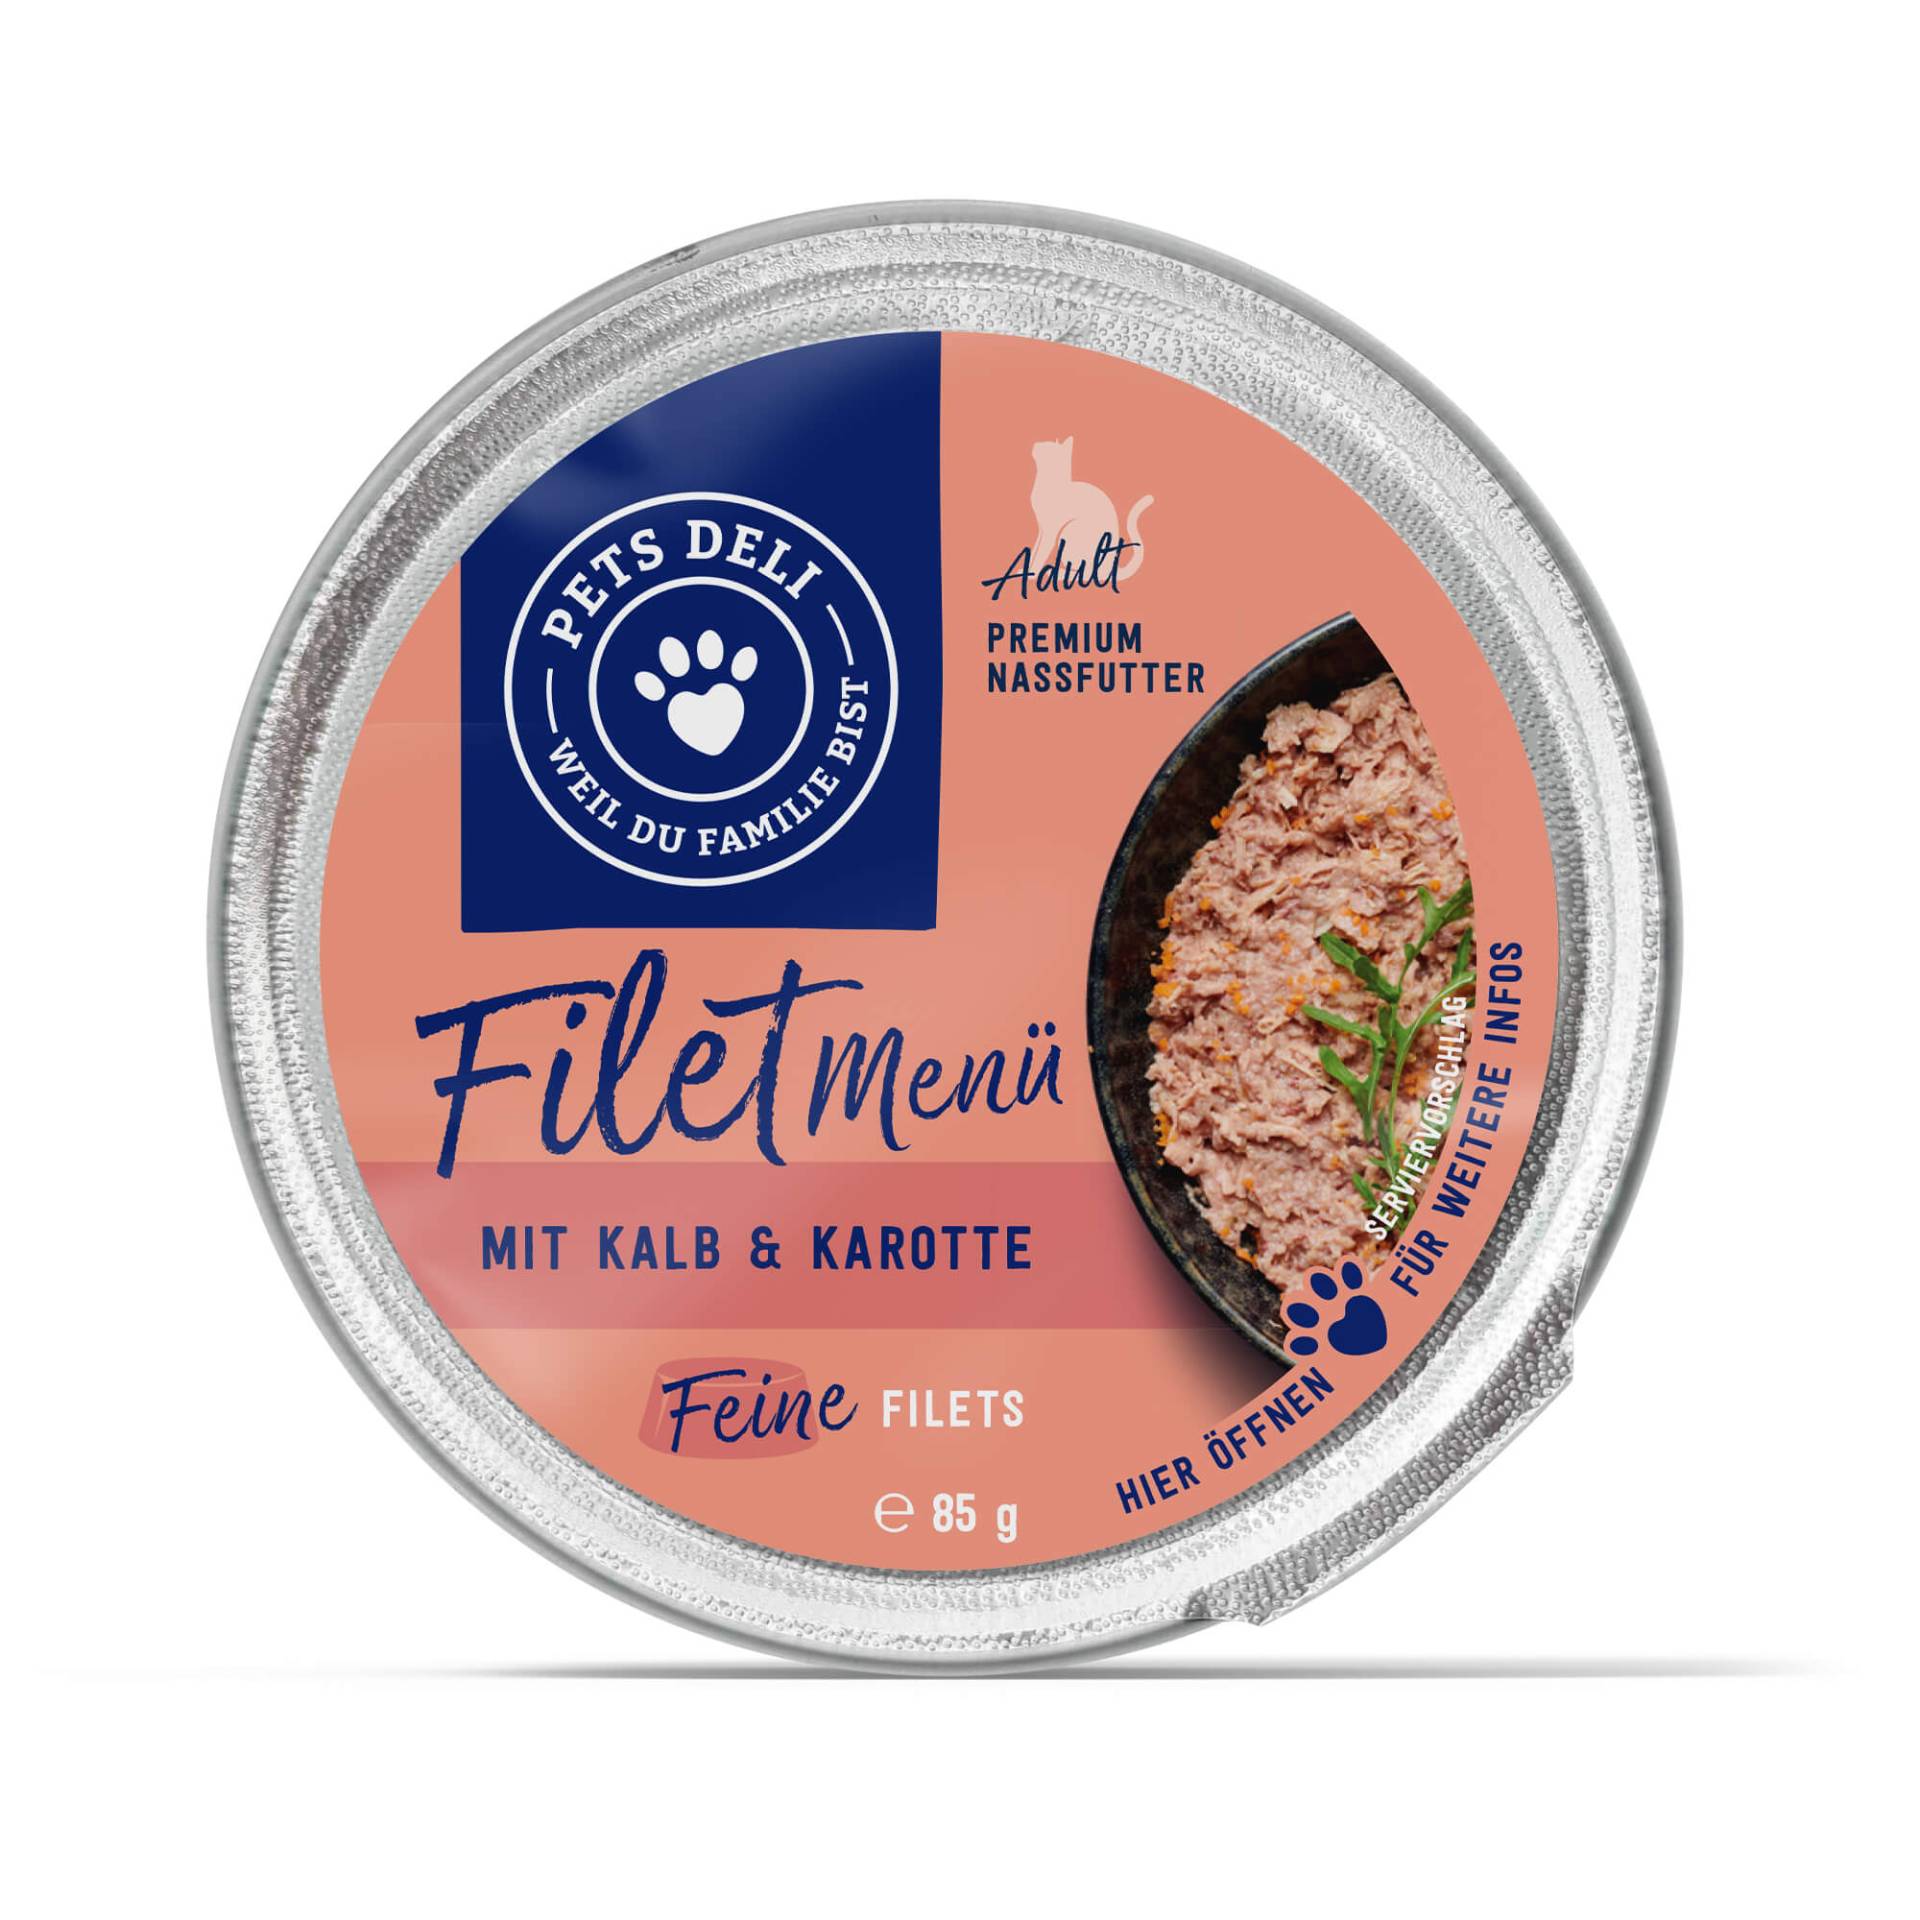 Nassfutter "Filet Menü" mit Kalb und Karotte - 85g / Einzeldose von Pets Deli